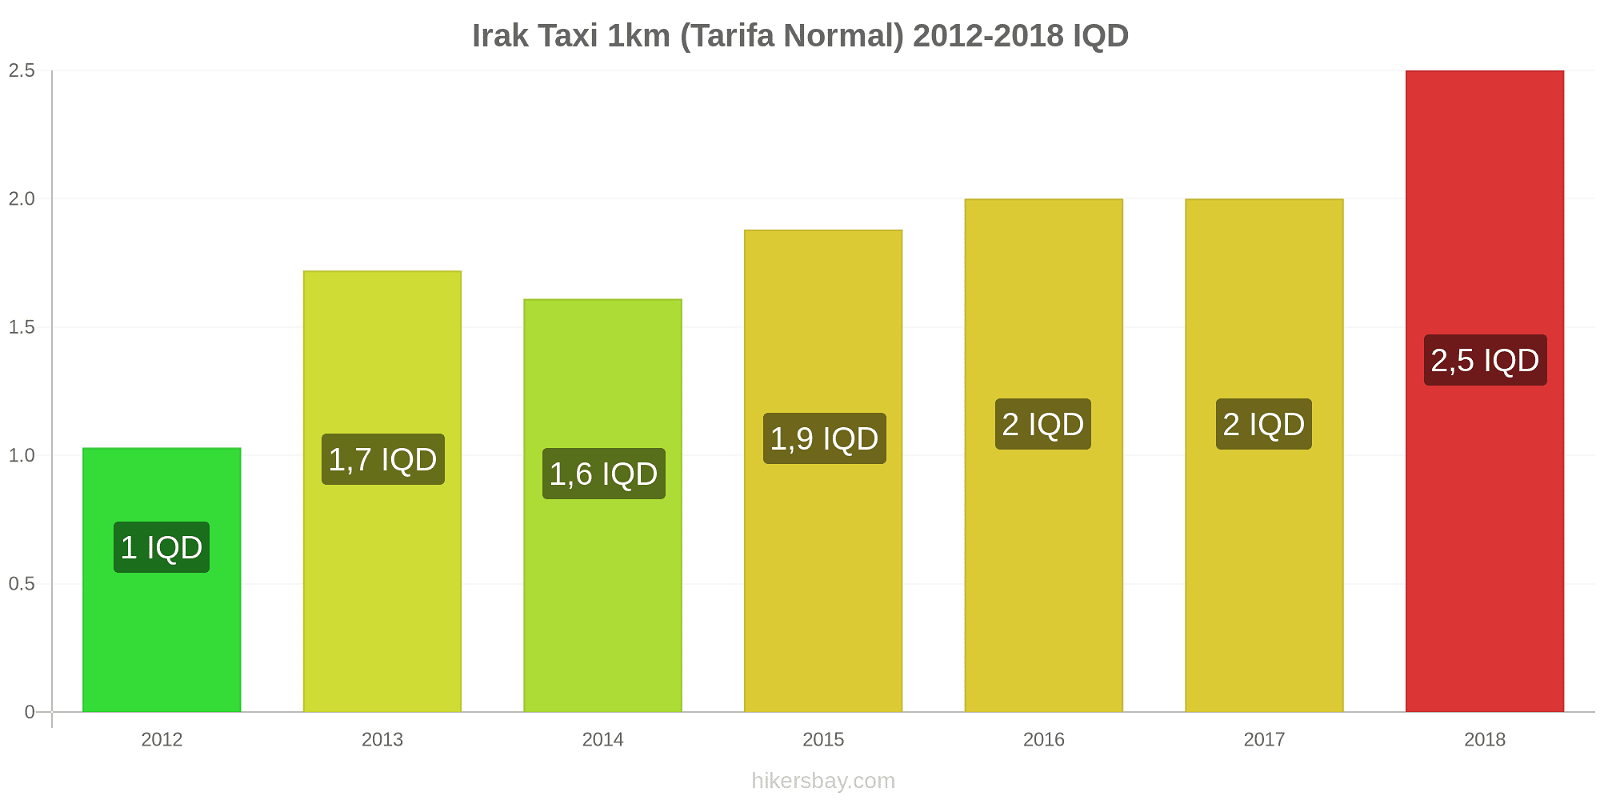 Irak cambios de precios Taxi 1km (tarifa normal) hikersbay.com